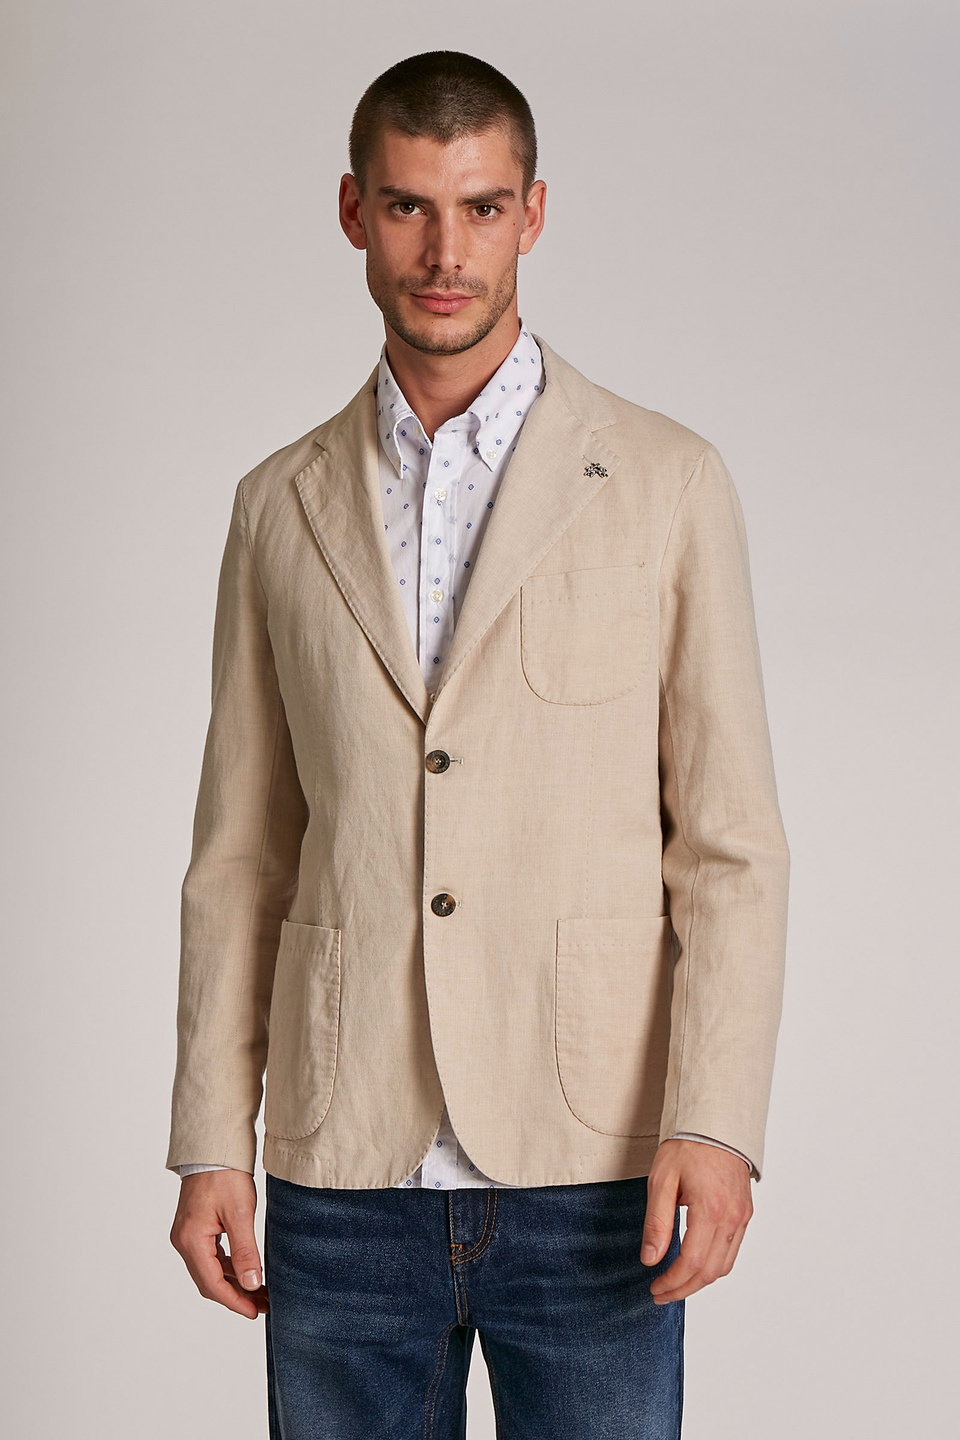 Chaqueta de hombre de mezcla de algodón y lino, modelo blazer, corte regular - La Martina - Official Online Shop